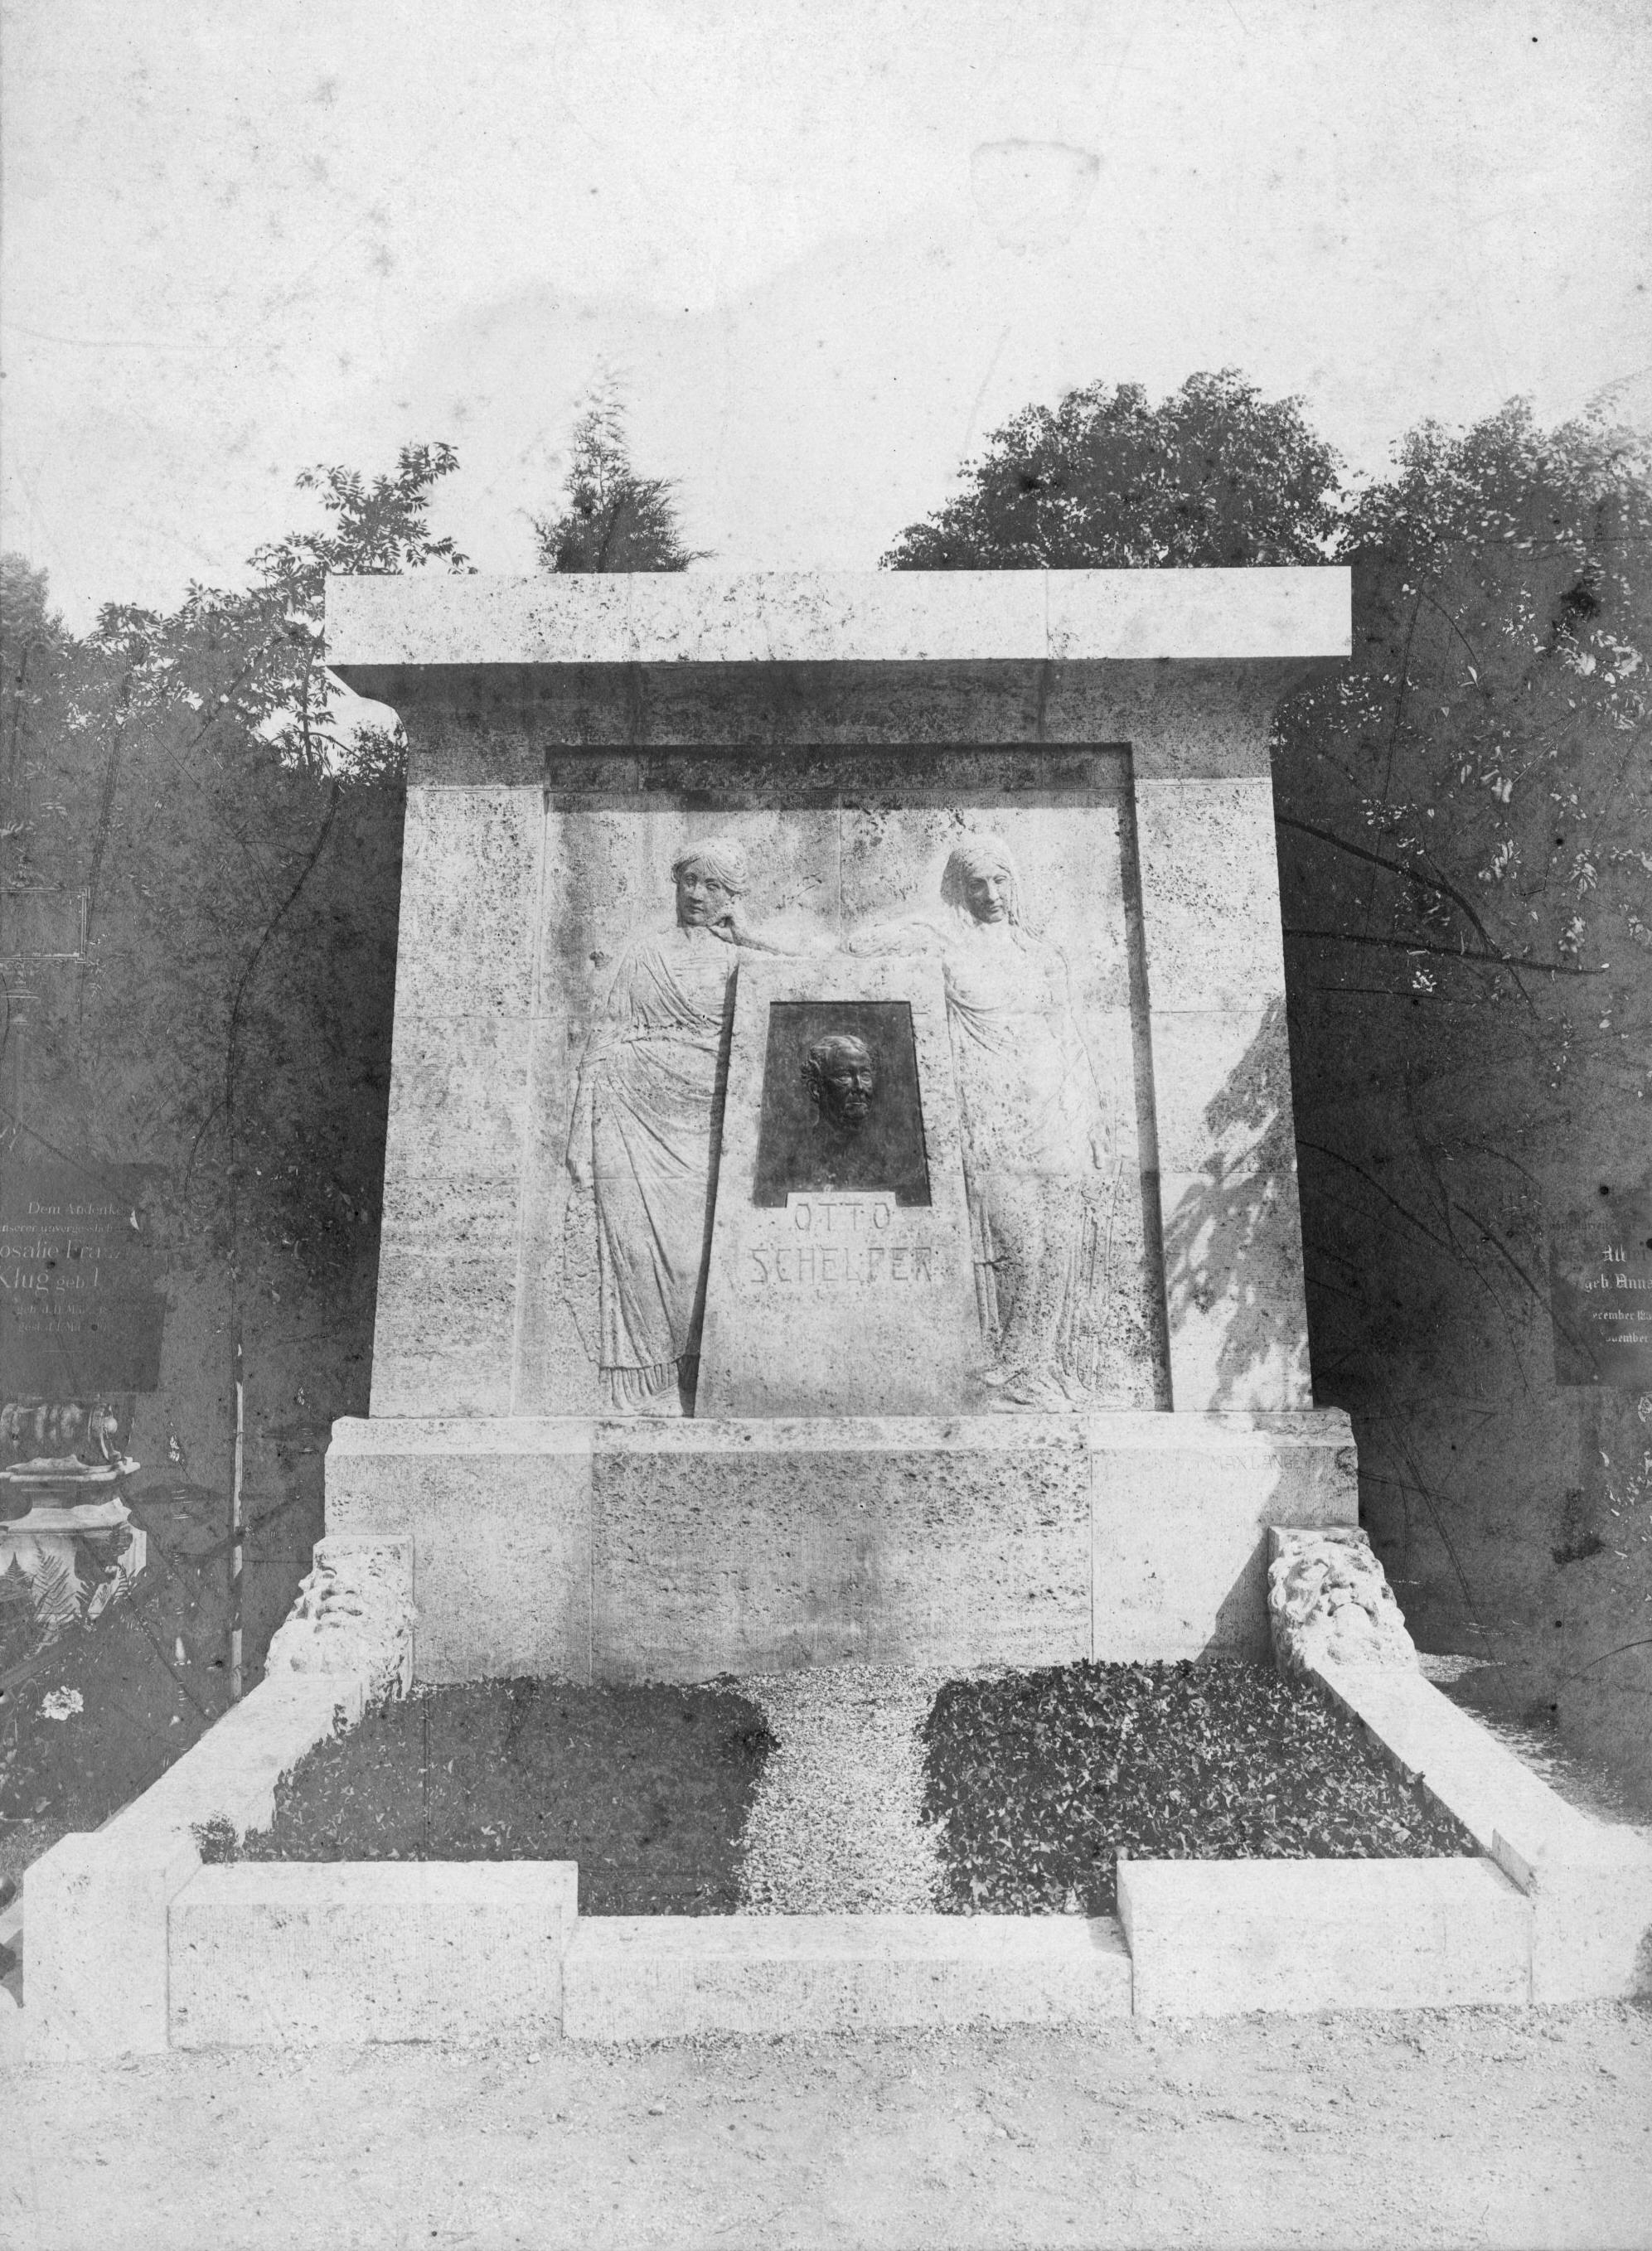 Grabmal Otto Schelper Historische Fotografie um 1912 Archiv Südfriedhof Leipzig